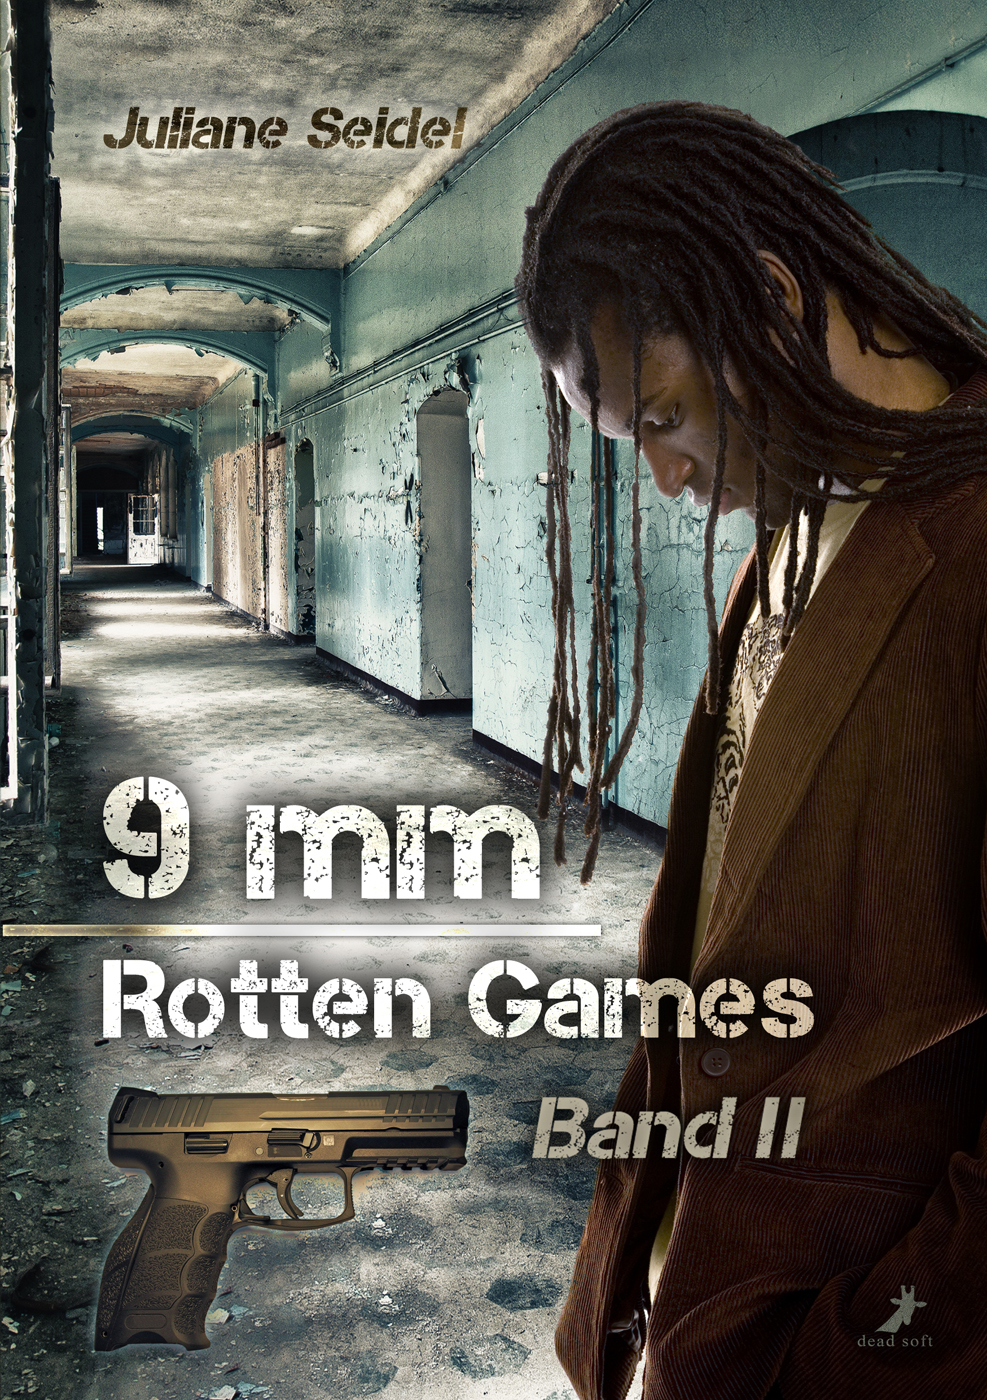 9mm - Rotten Games